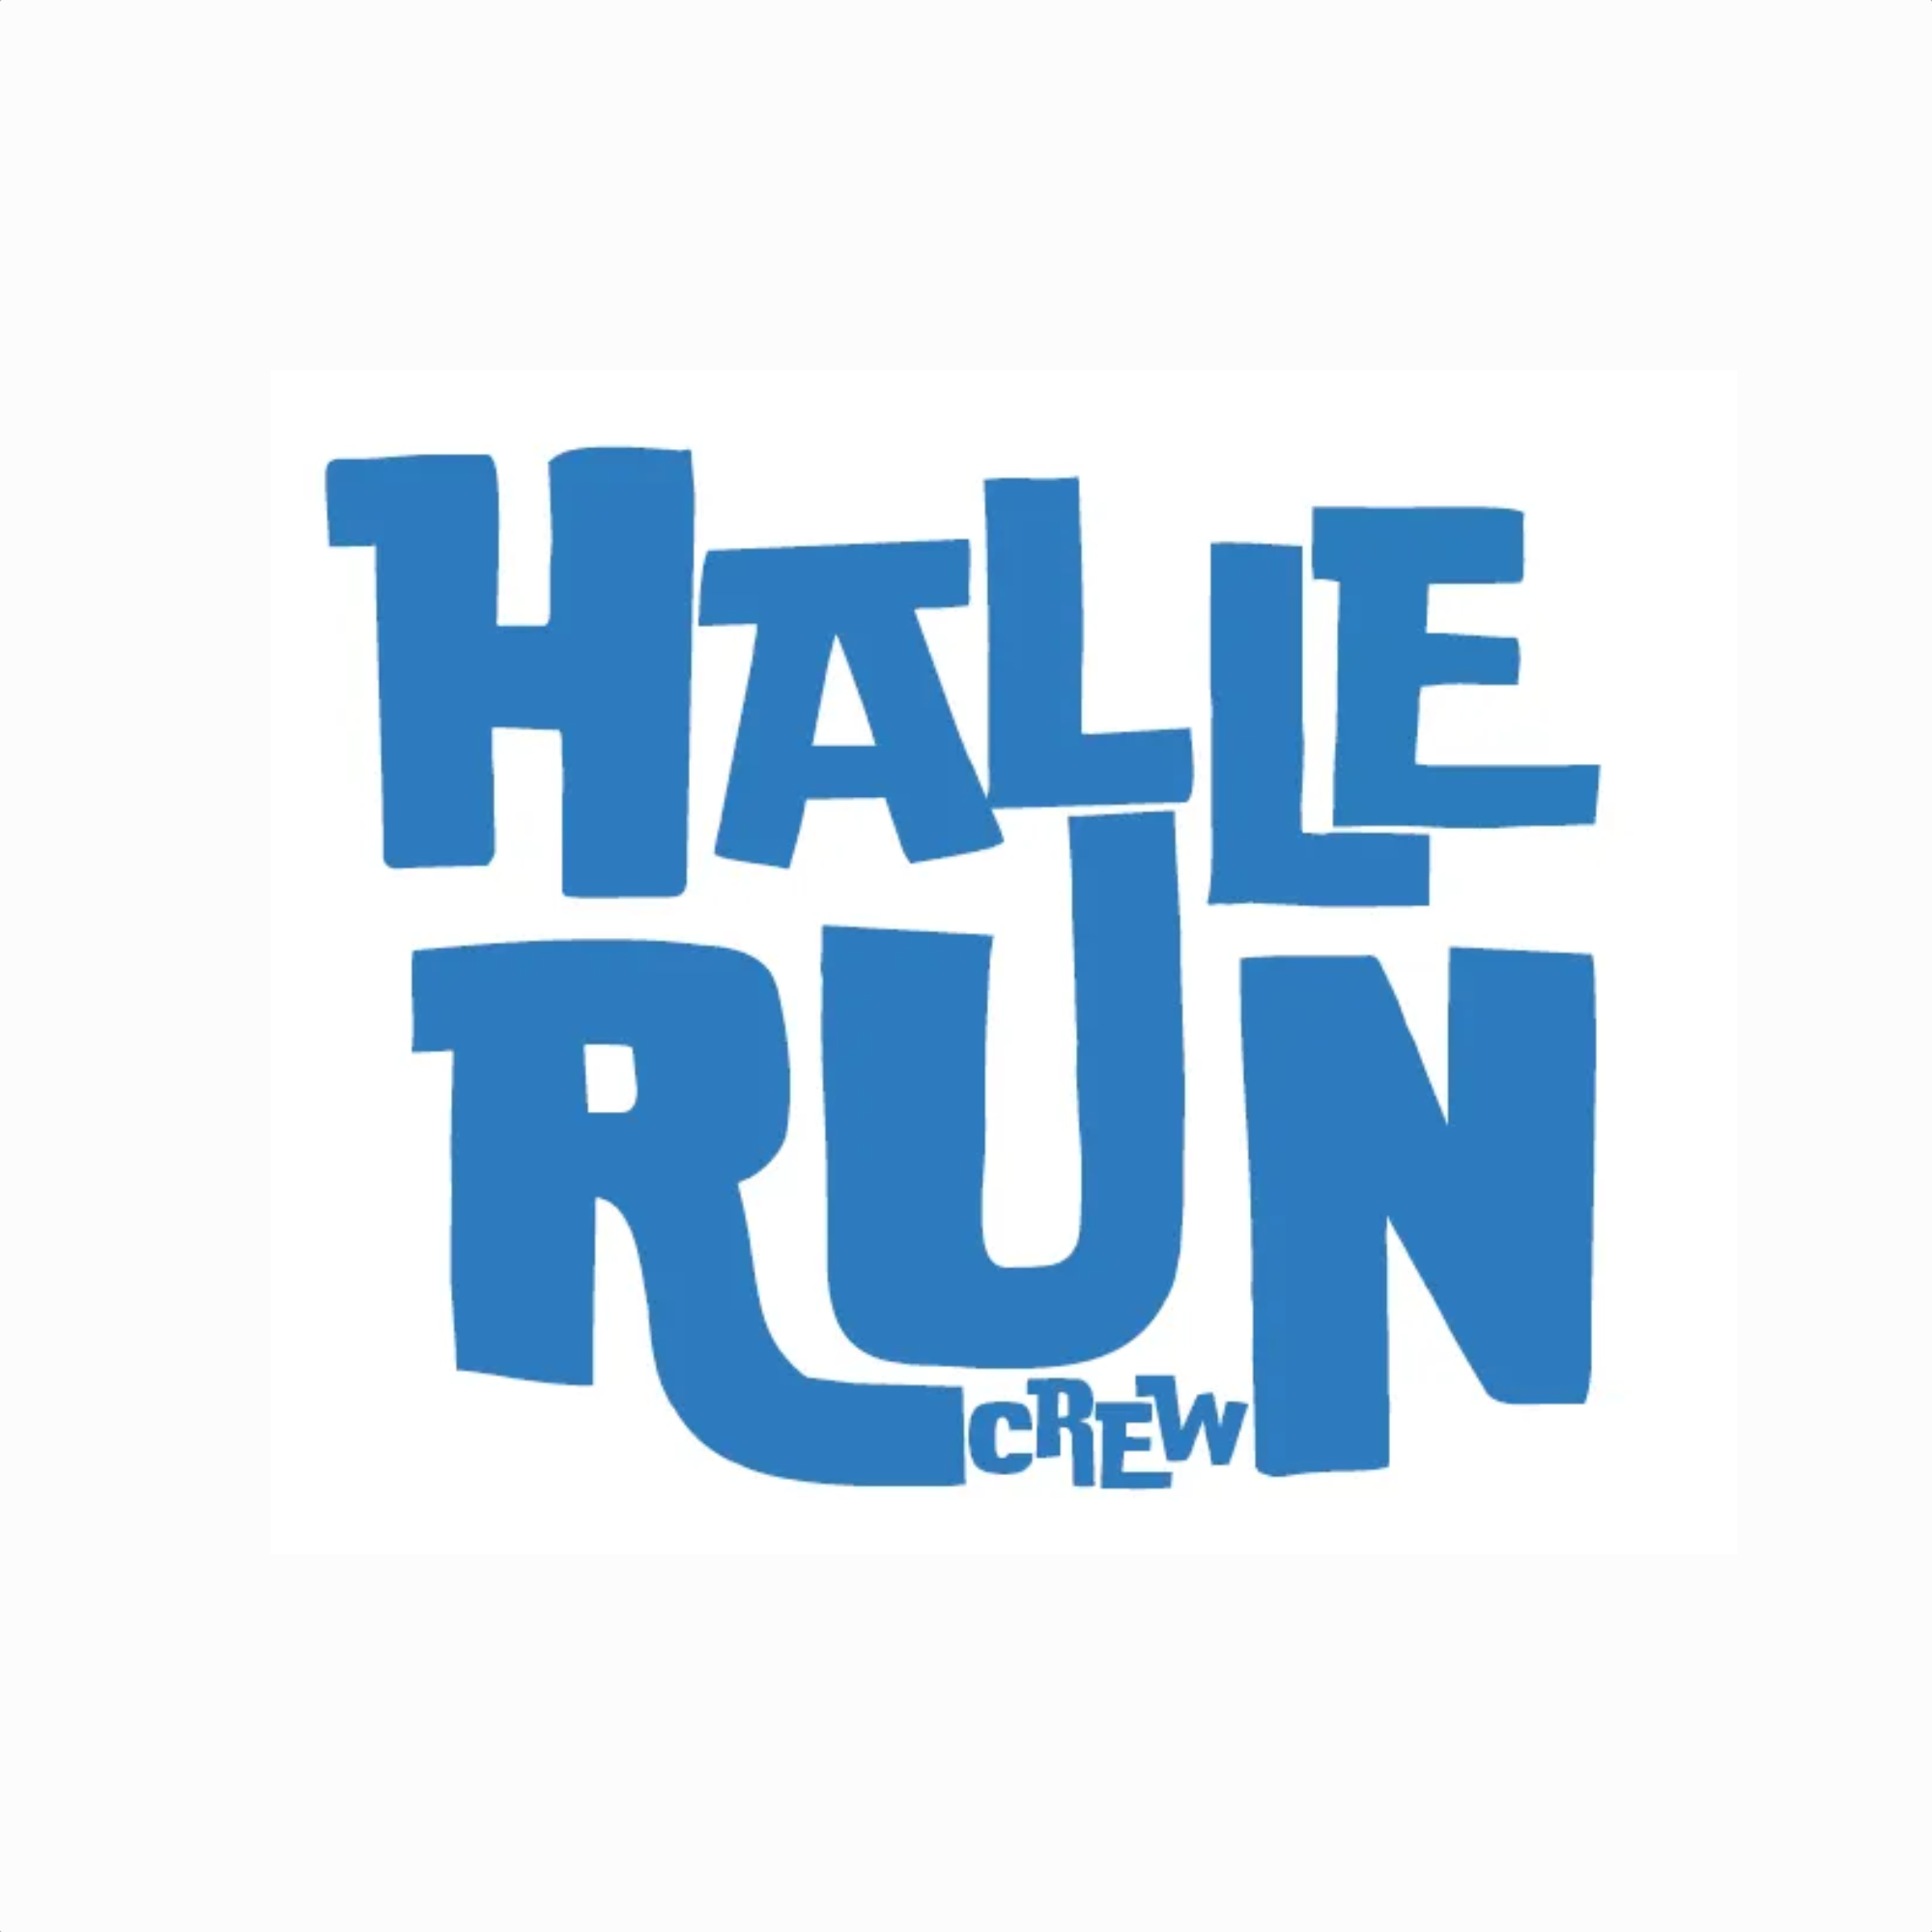 Halle Run Crew